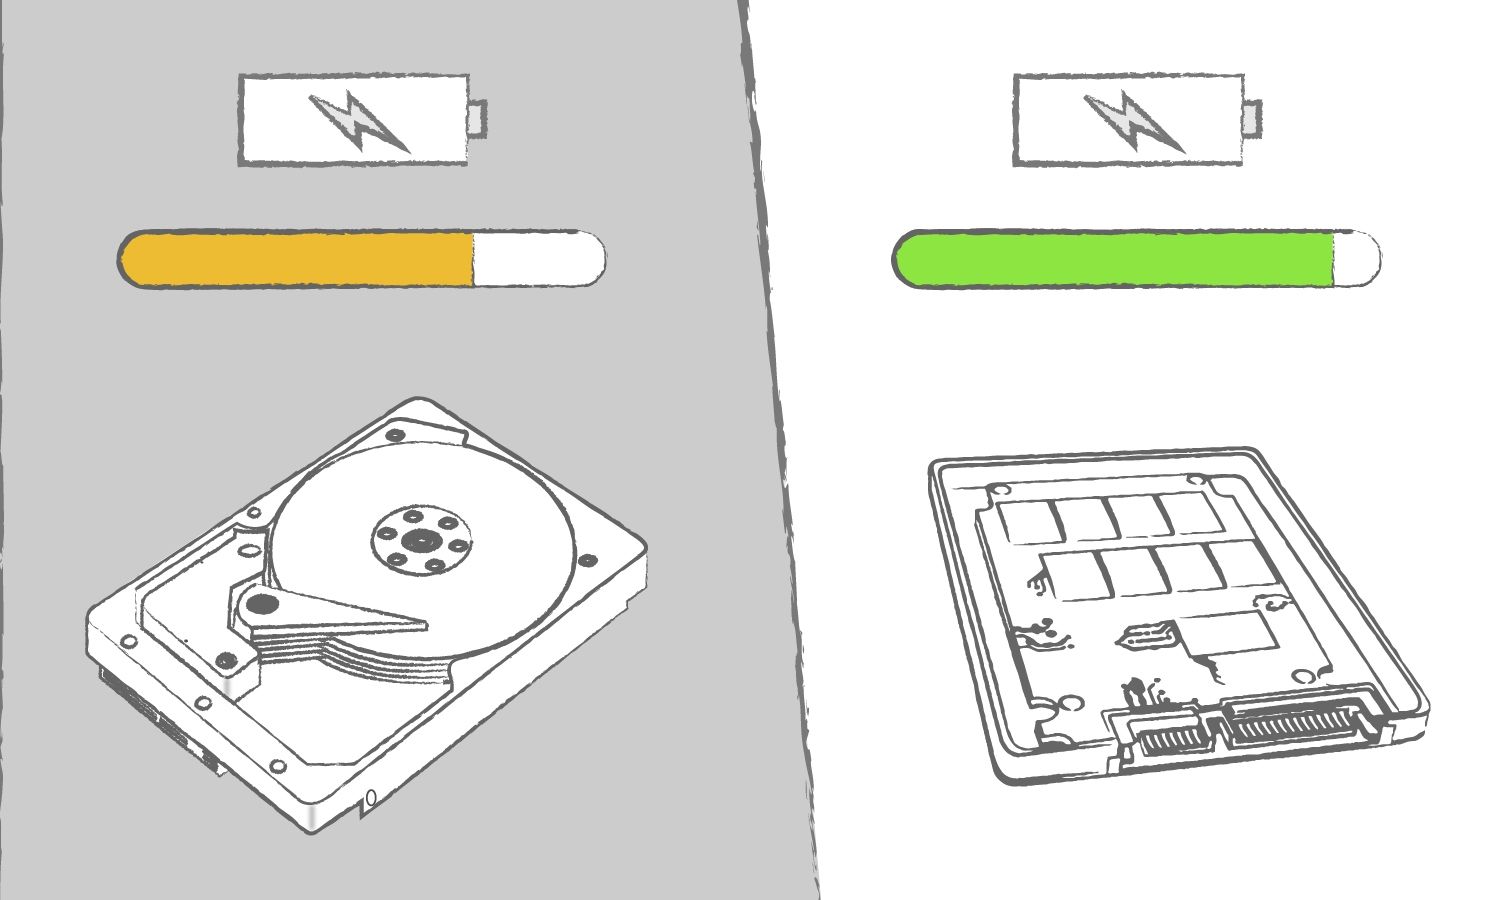 Ilustración que muestra los beneficios de una SSD en comparación con un disco duro considerando la eficiencia del ordenador